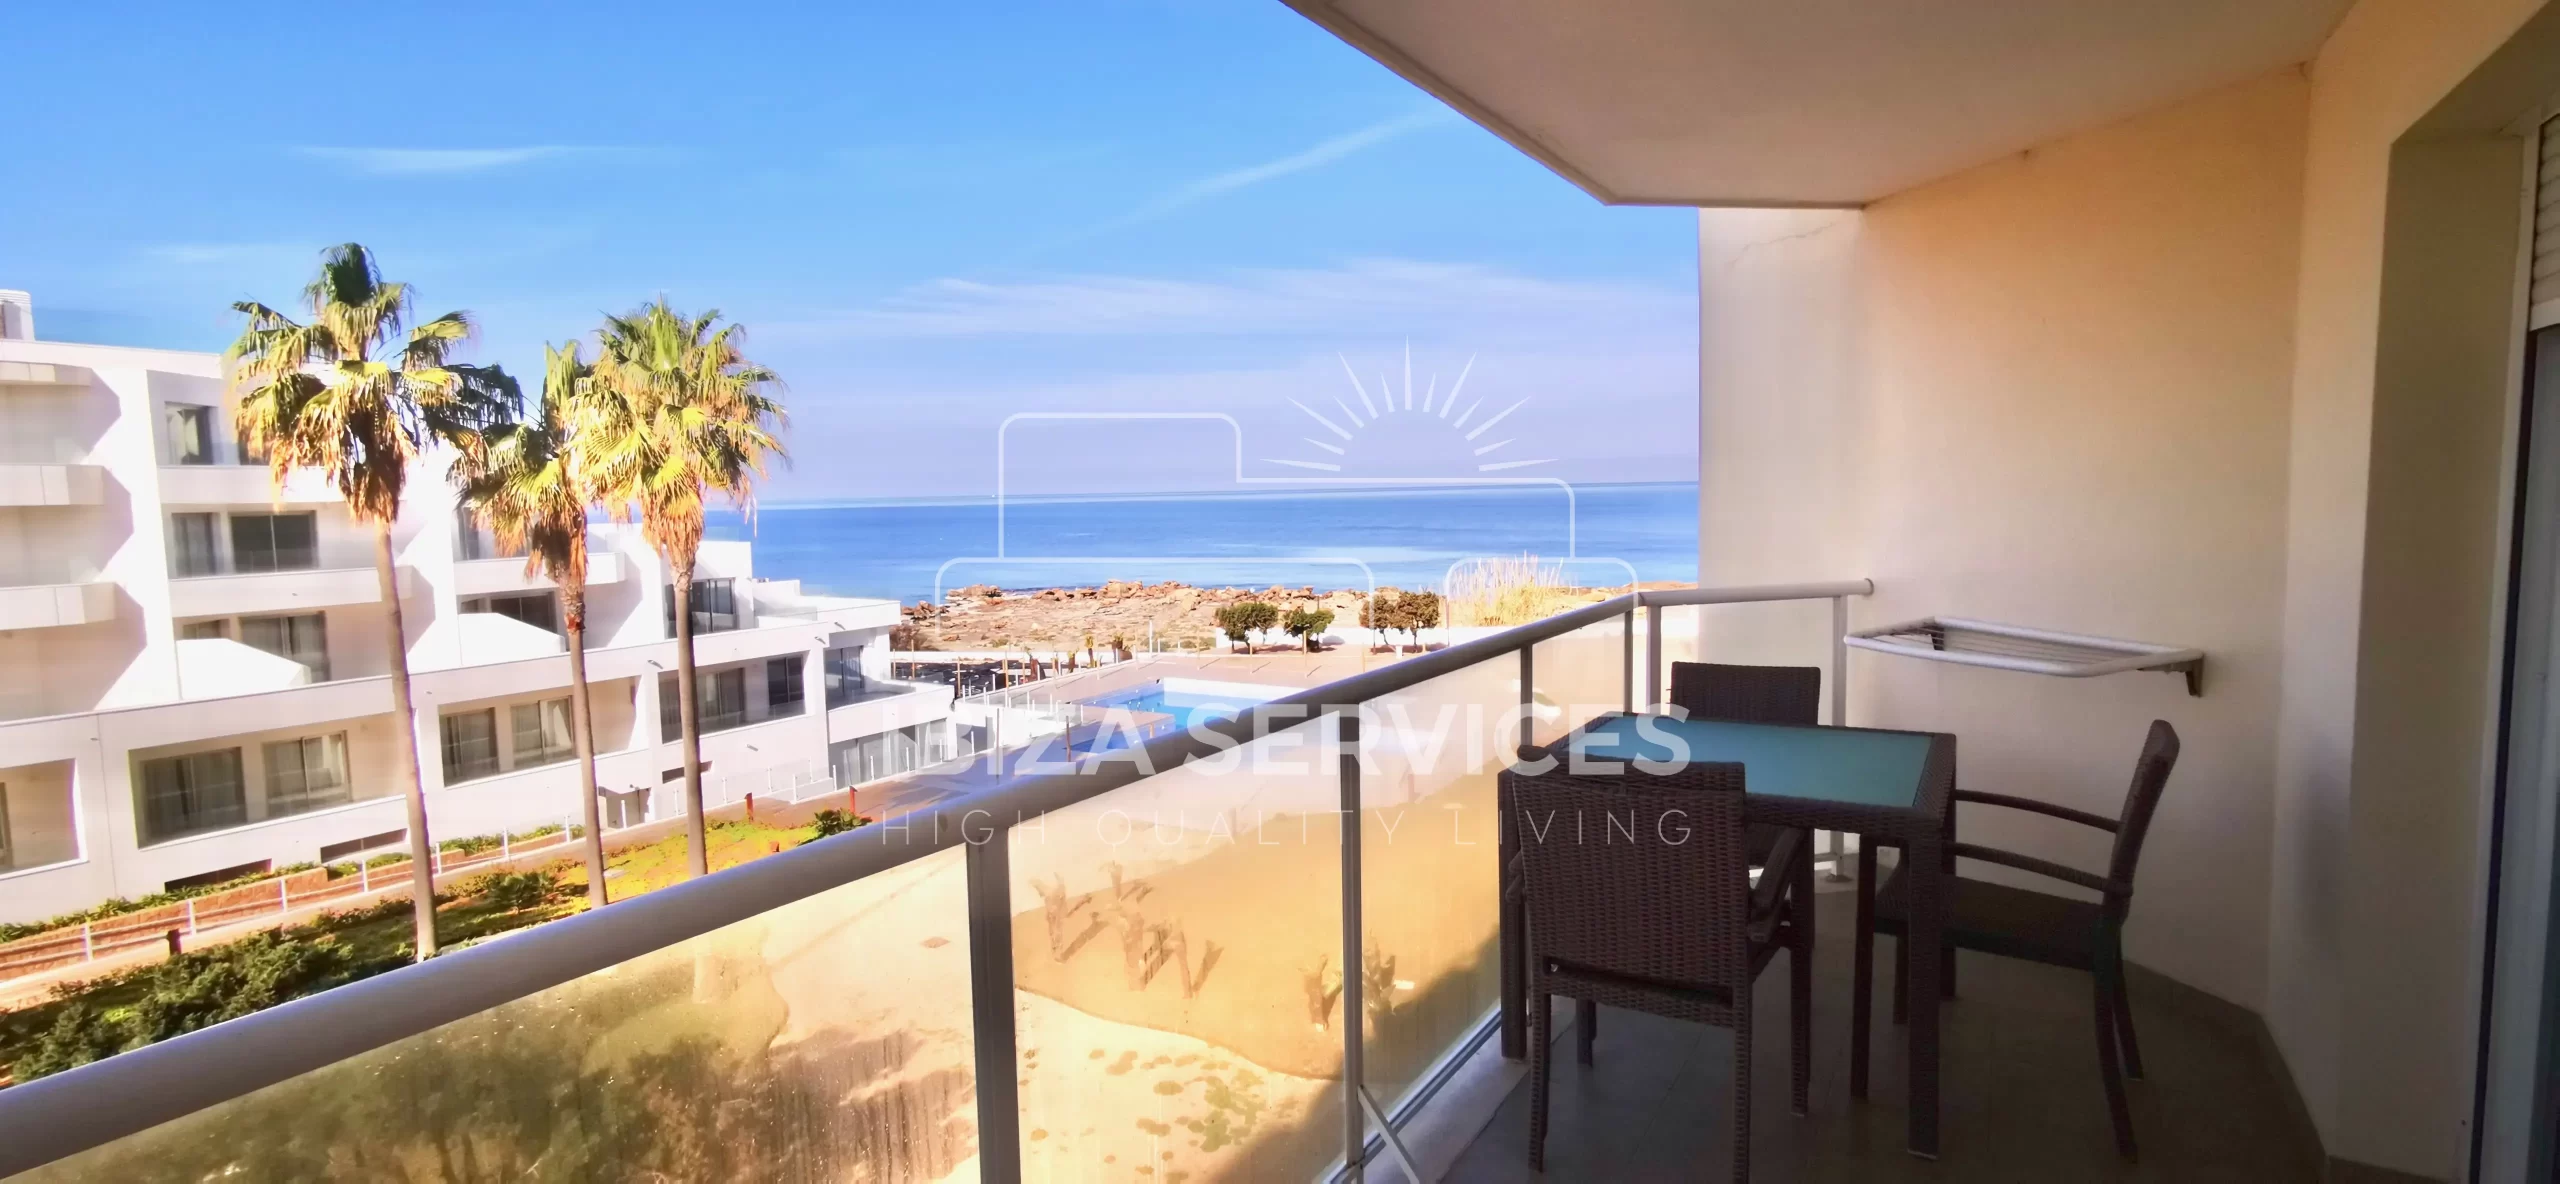 Großzügige Wohnung mit Meerblick zum Verkauf an der Westküste Ibizas